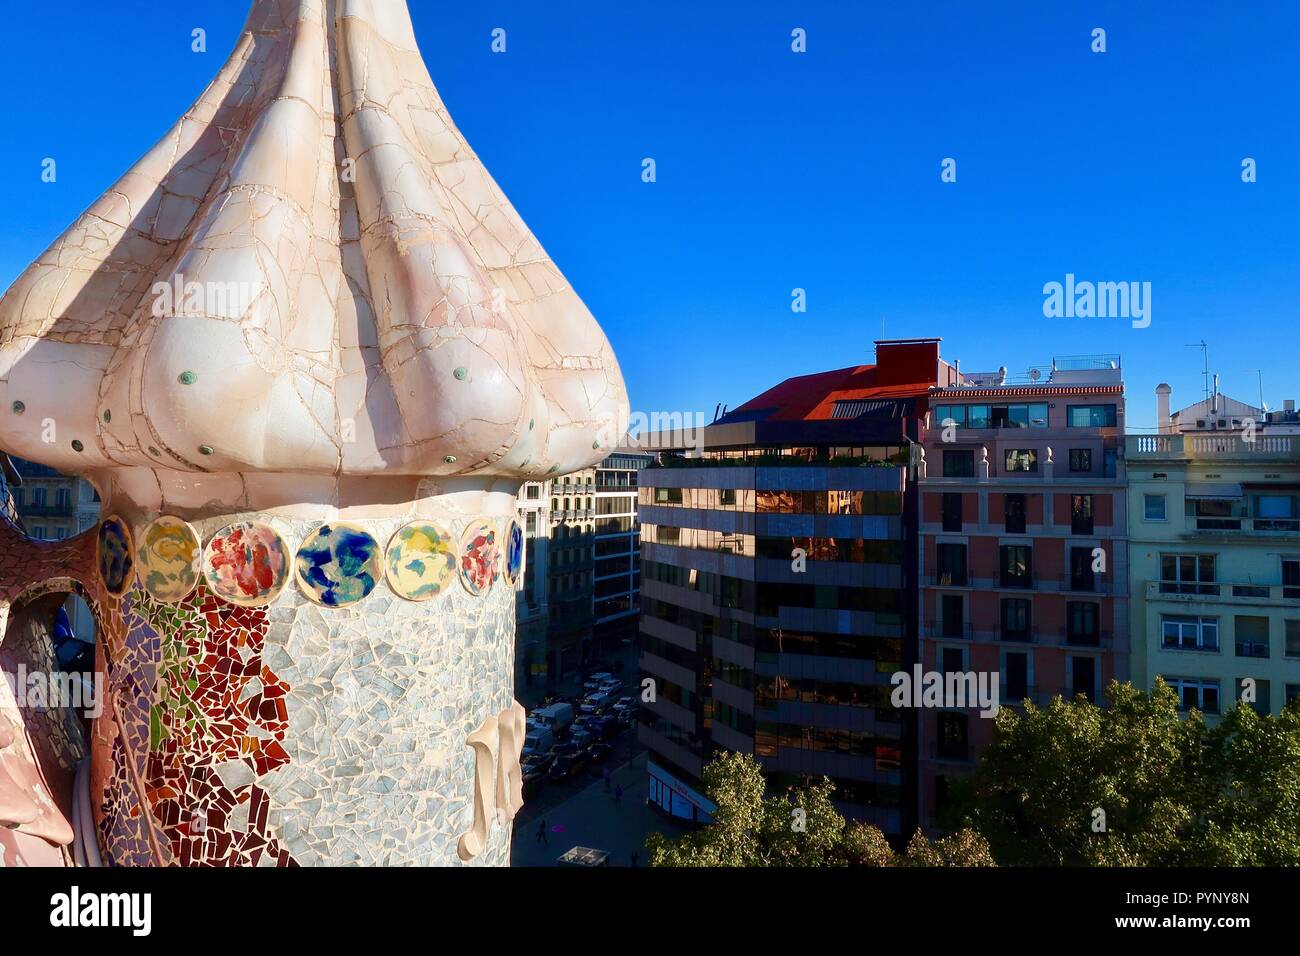 La Casa Batlló de Gaudi, Barcelone, Espagne. Lumineuse, ensoleillée matin d'automne. Octobre 2018. Banque D'Images